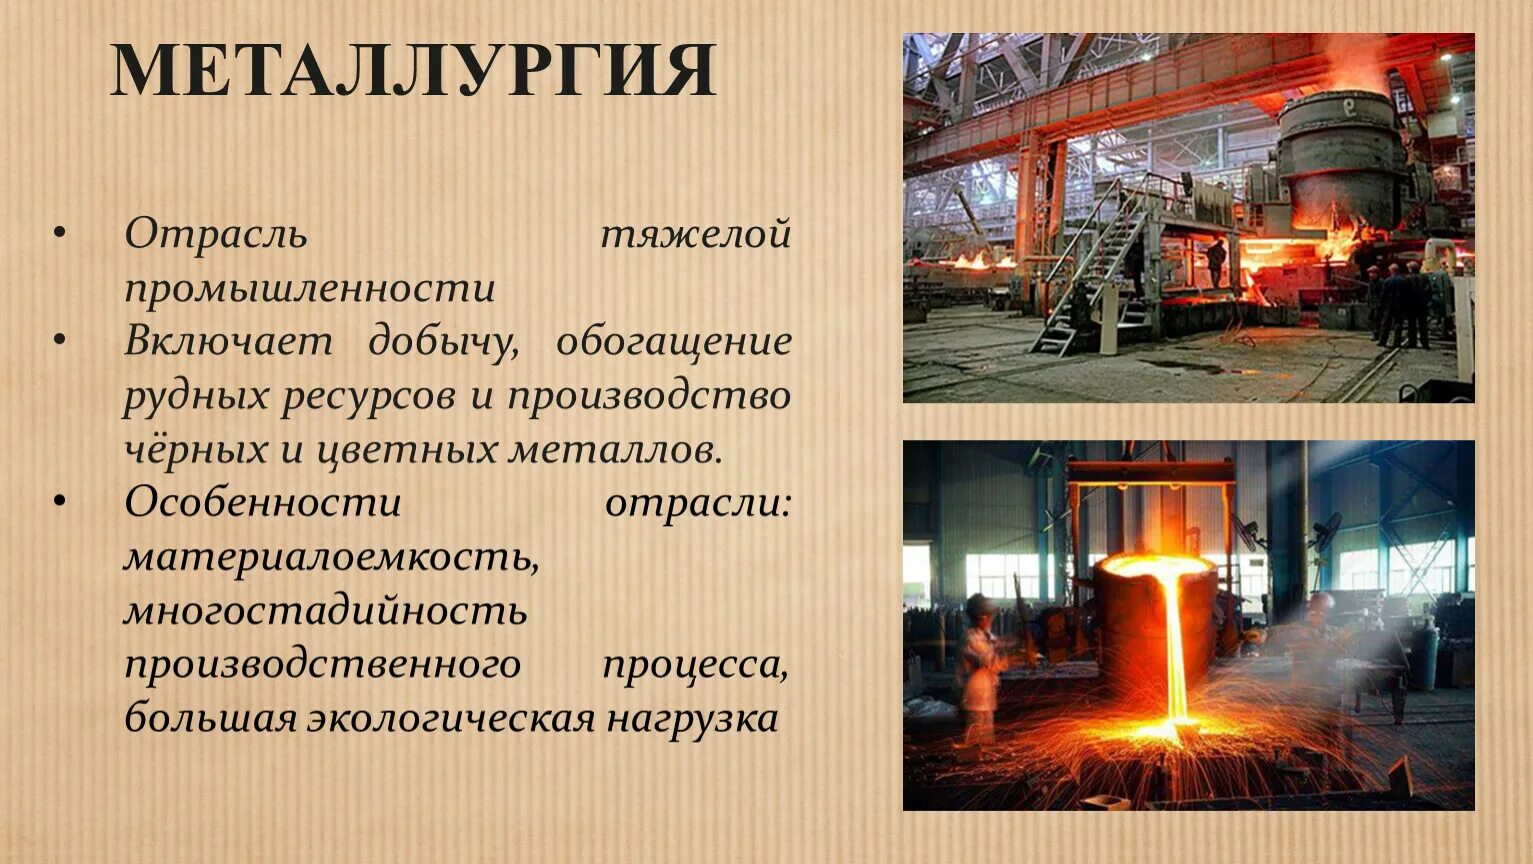 Цветная металлургия развитие. Металлургия. Металлургия промышленность. Отрасли металлургии. Металлургия отрасль промышленности.